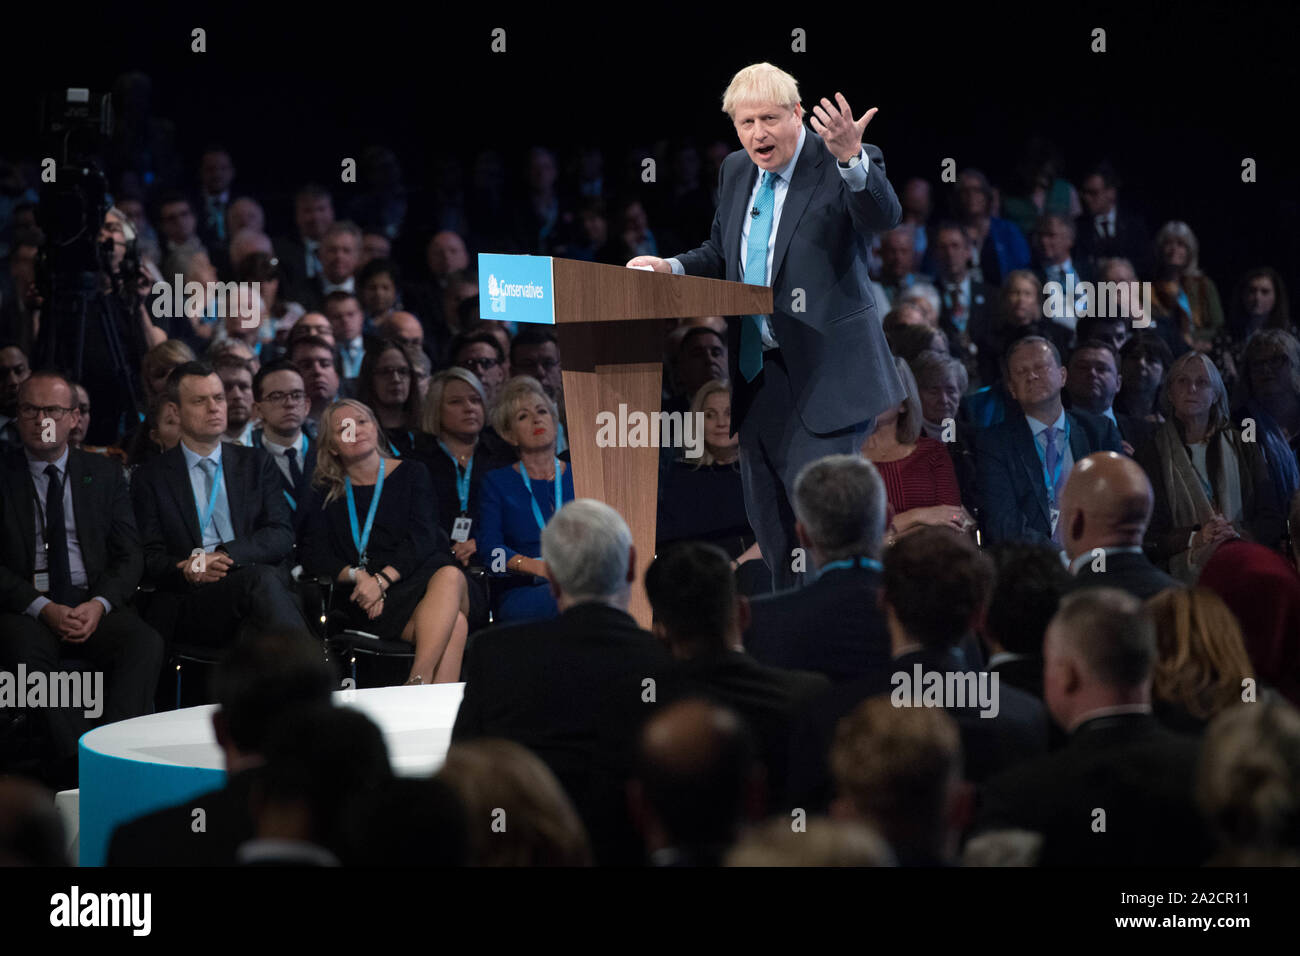 Premierminister Boris Johnson liefert seine Rede auf dem Parteitag der Konservativen Partei in der Manchester Convention Center. PA-Foto. Bild Datum: Mittwoch, 2. Oktober 2019. Siehe PA Geschichte TORY Main. Foto: Stefan Rousseau/PA-Kabel Stockfoto